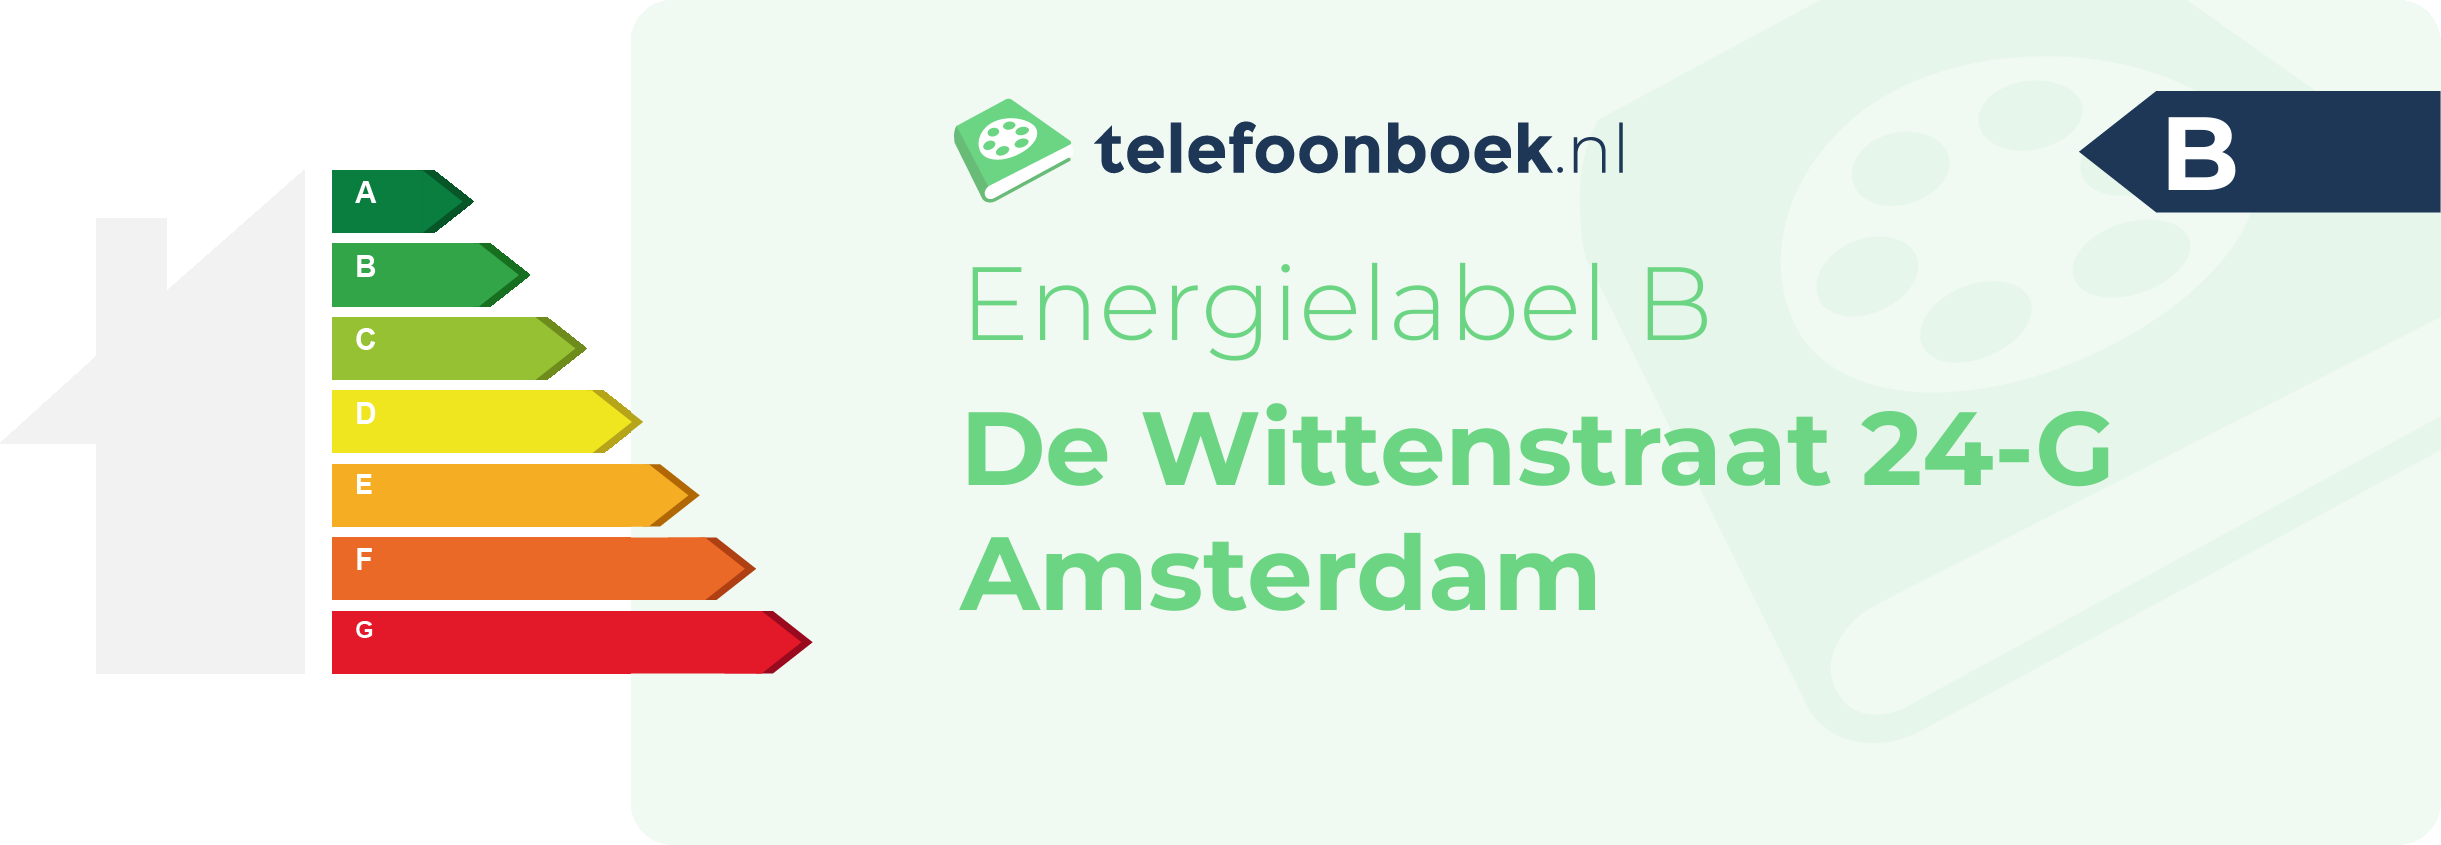 Energielabel De Wittenstraat 24-G Amsterdam